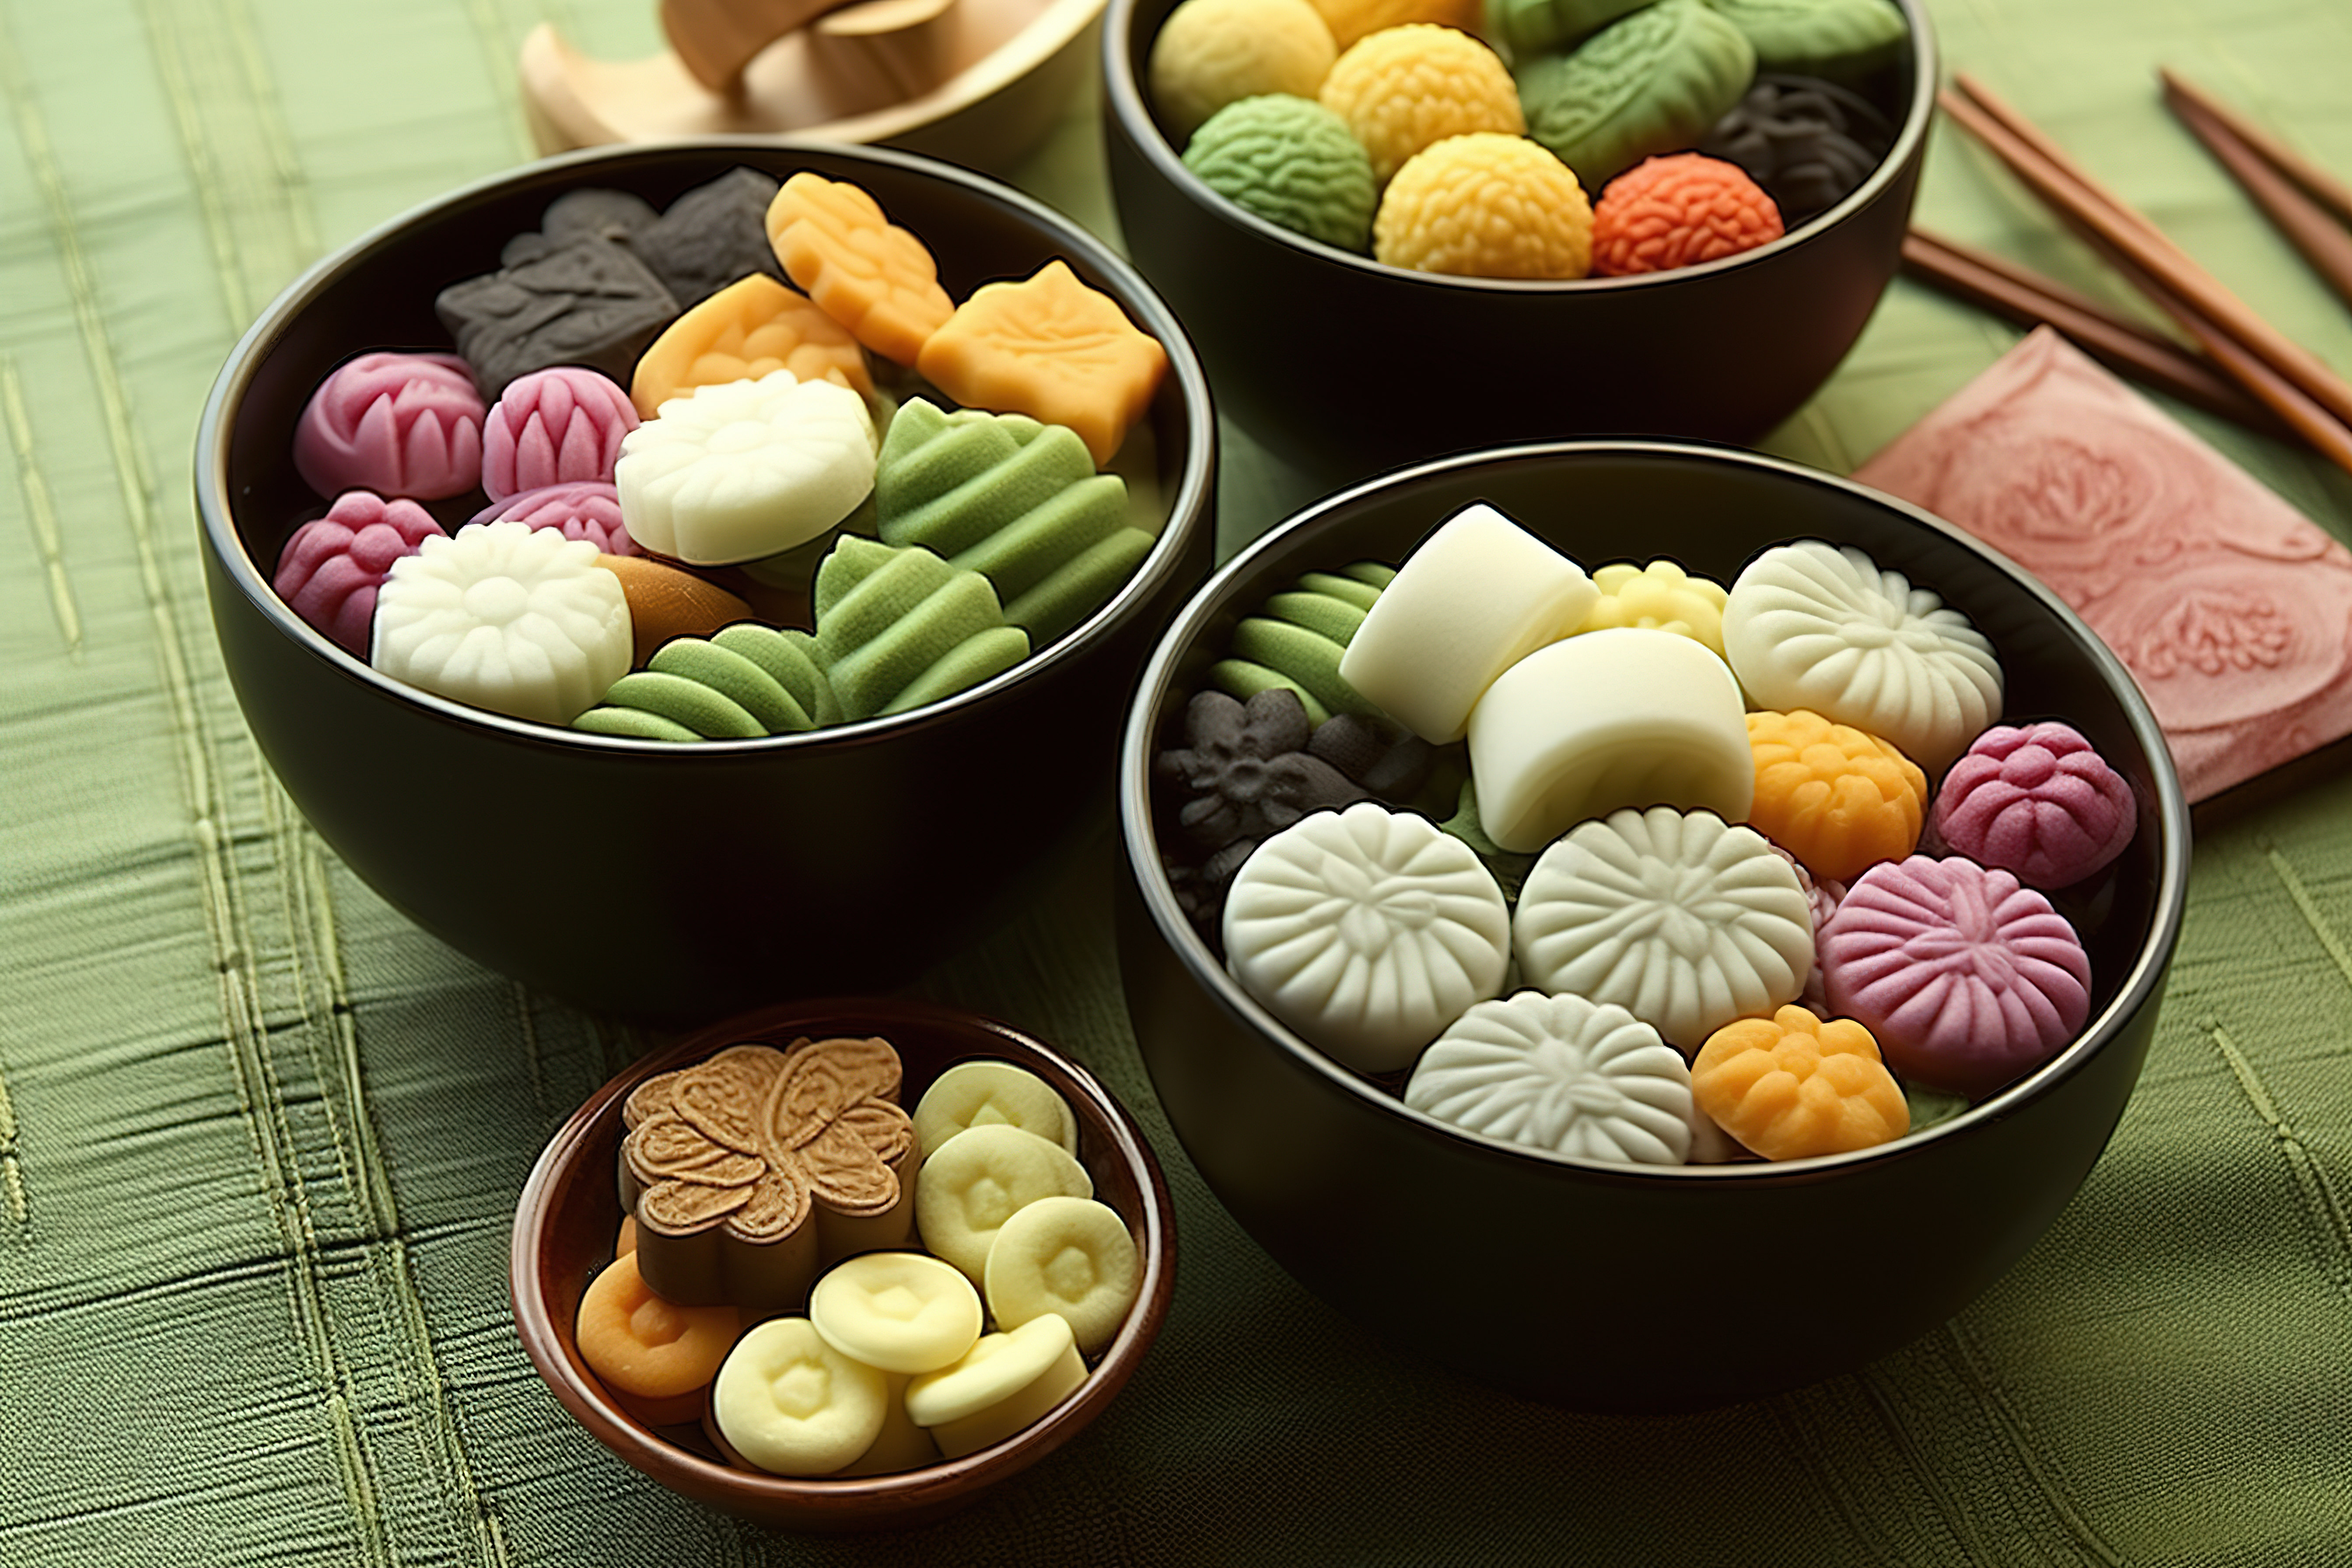 多个碗中展示了一系列亚洲咸味糖果图片